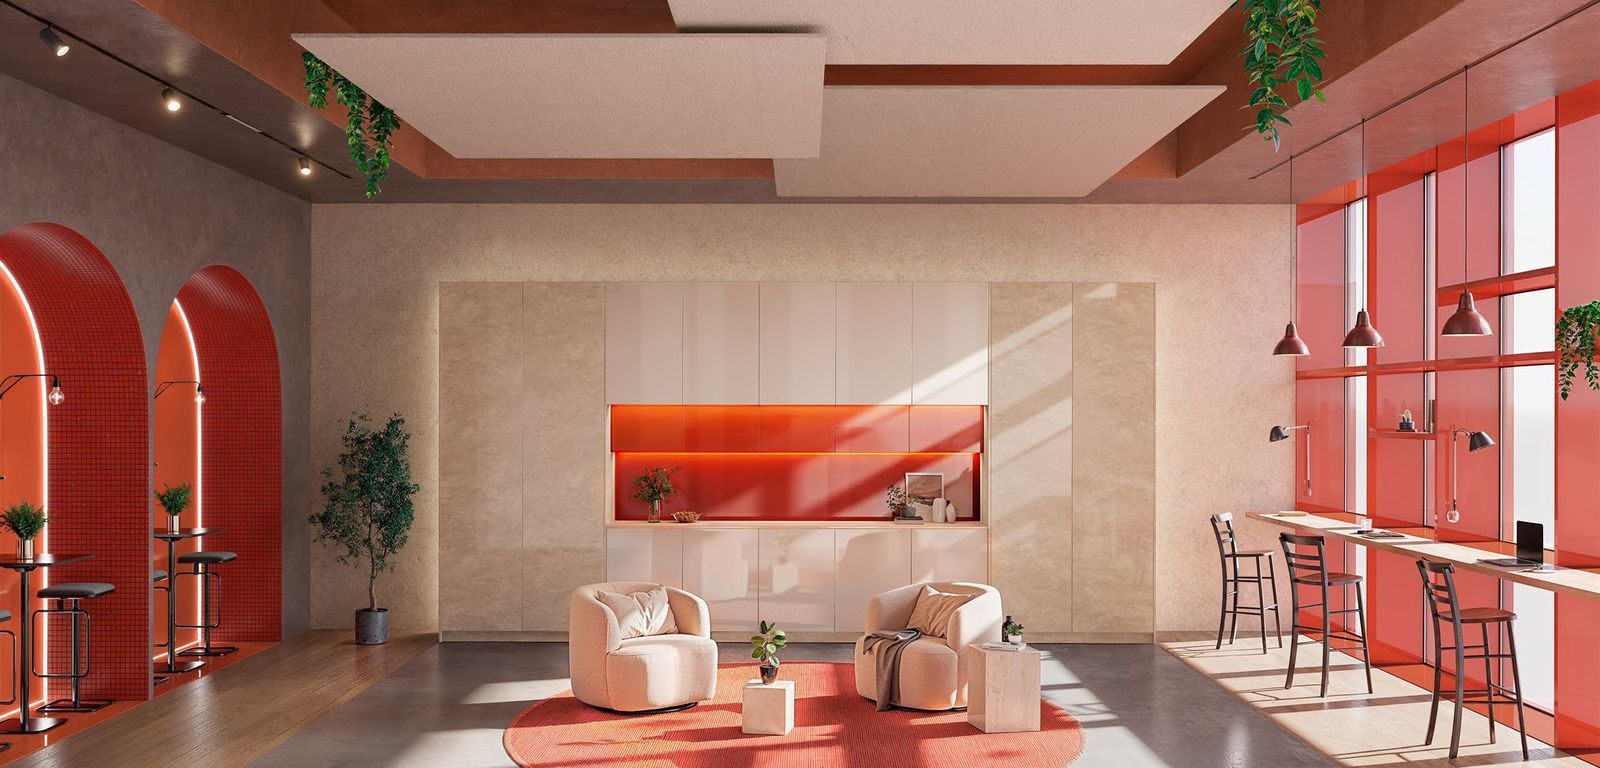 Gemstone y Coral, by TRANSFORMAD: Fusionando Elegancia en el Diseño Interior 